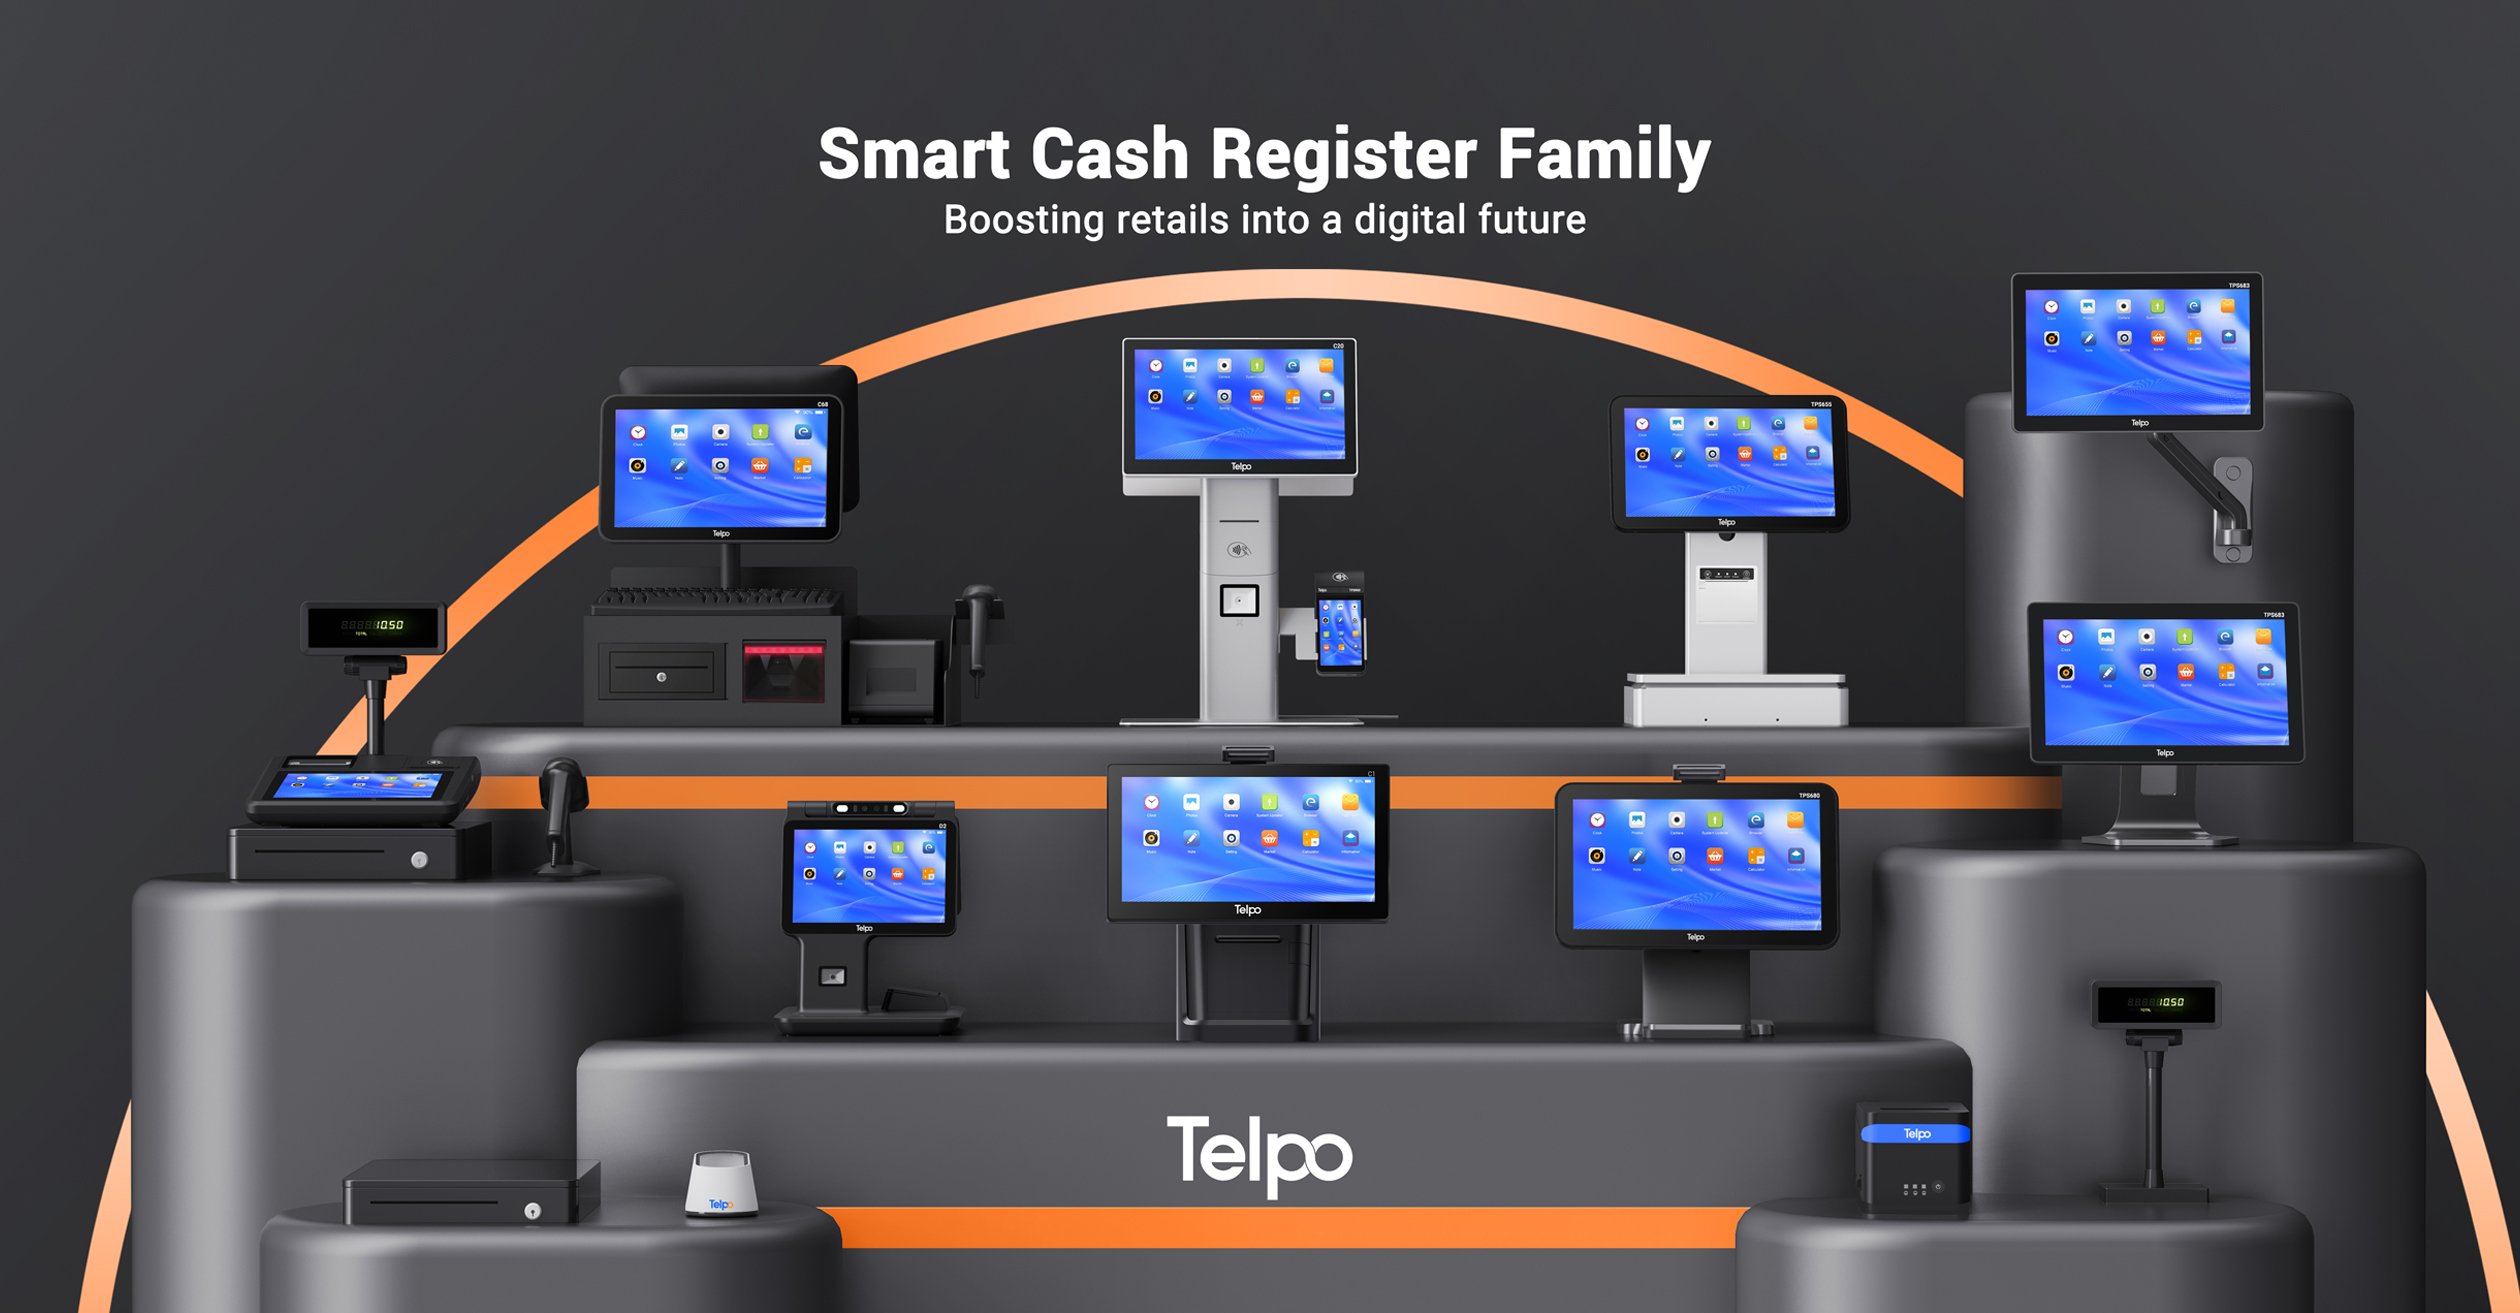 telpo-smart-cash-register.jpg